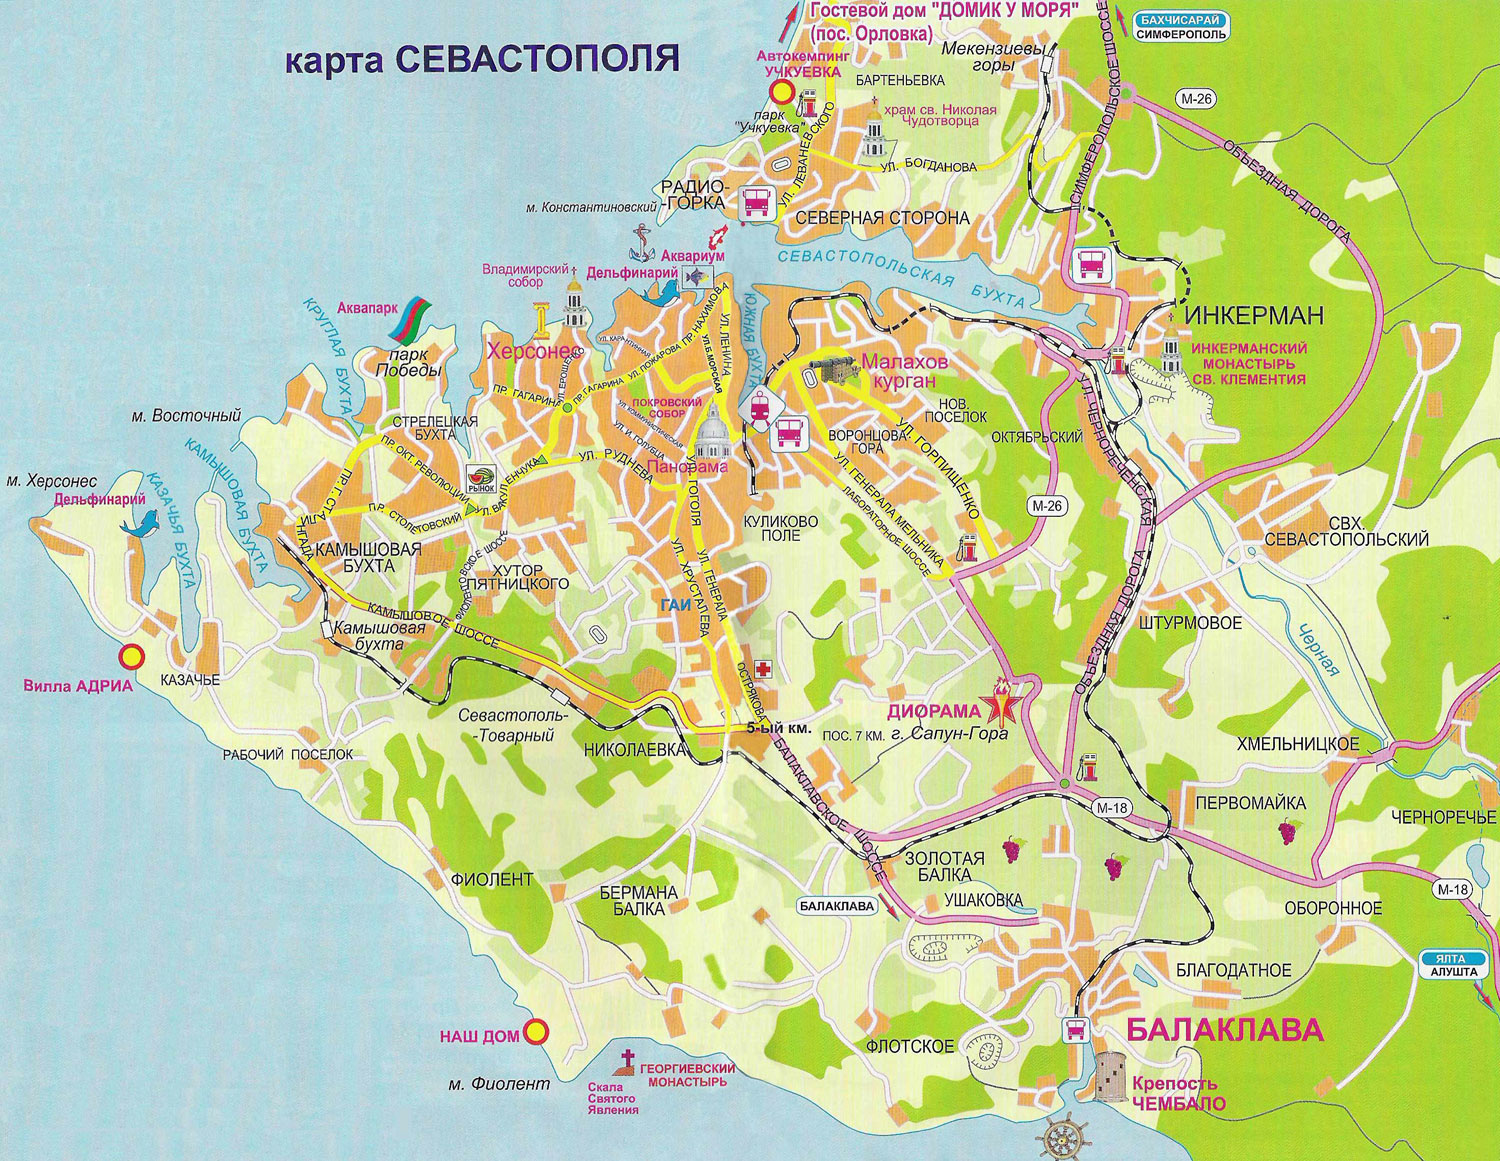 СЕВАСТОПОЛЬ. Карта Севастополя, с основными достопримечательностями, и окрестностями